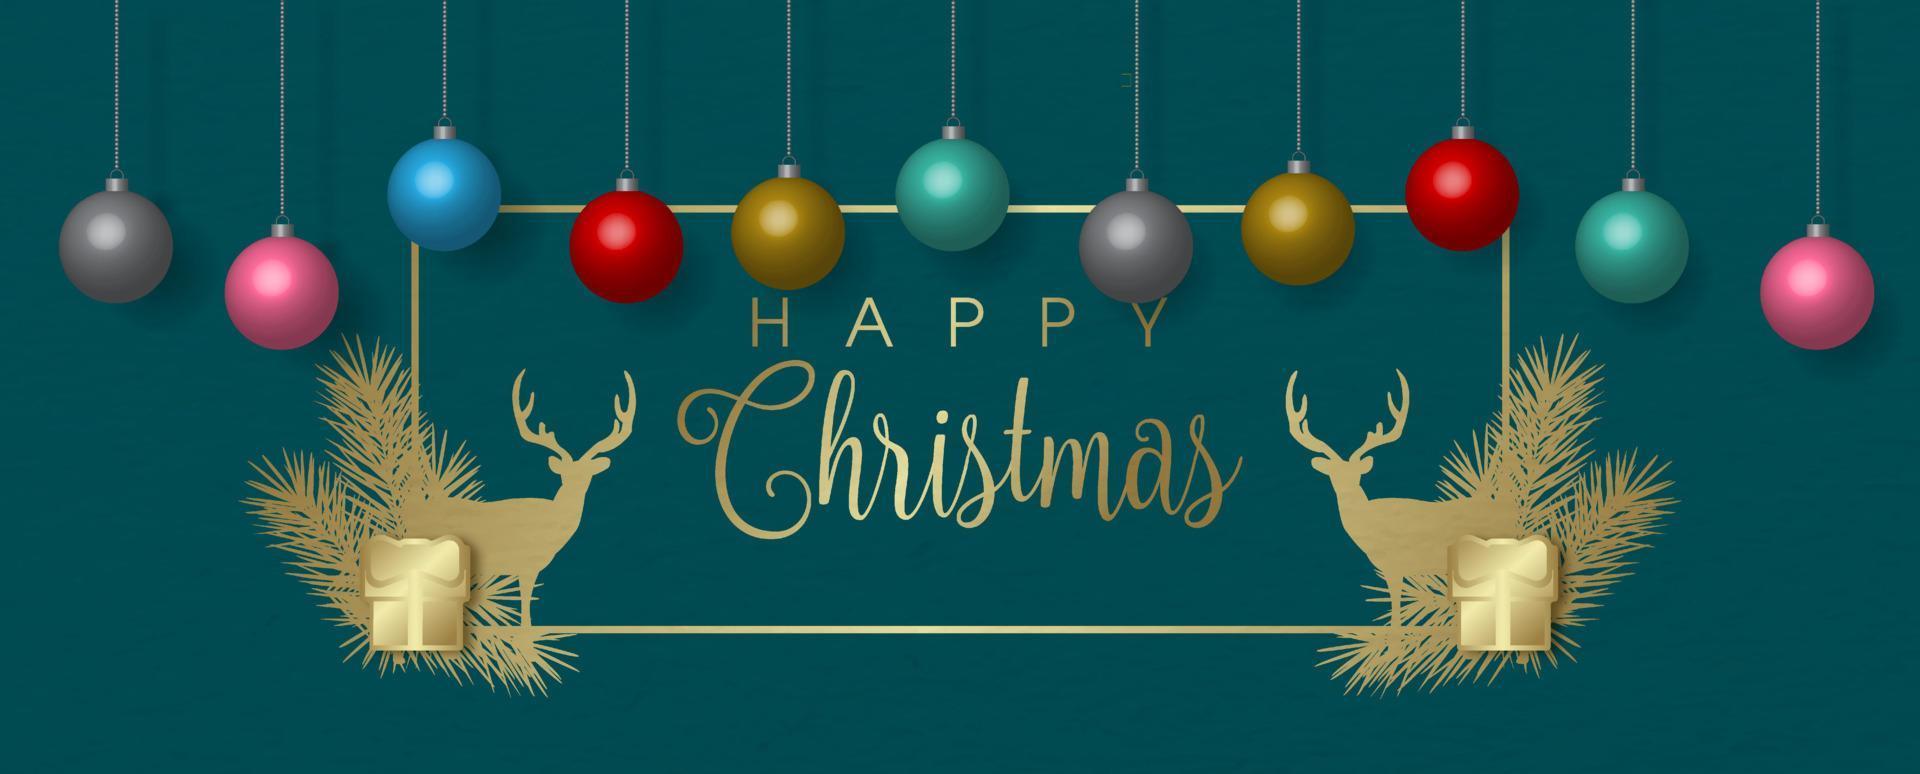 bunte weihnachtskugeln im 3d-stil hängen an goldenen und dekorationen weihnachtsrahmen mit fröhlichen weihnachtsbuchstaben isolieren auf grünem hintergrund. vektor